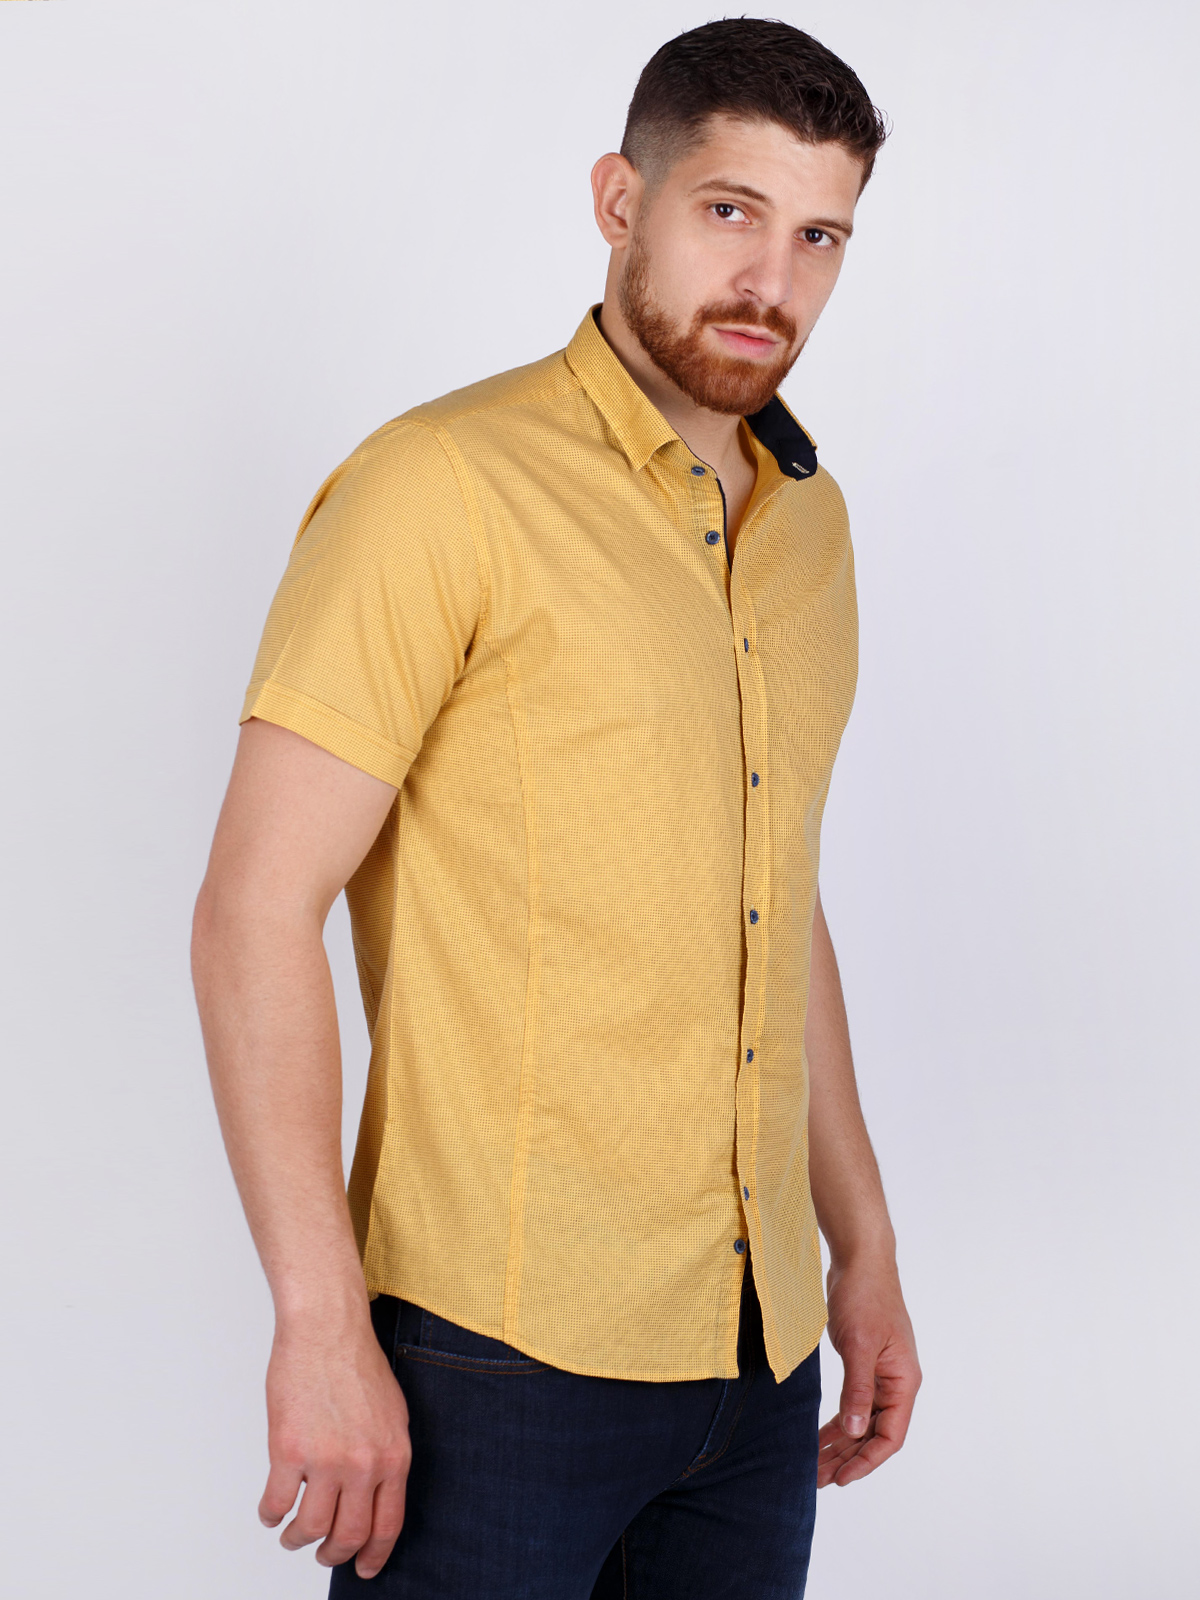 Жълта вталена риза със ситен принт - 80221 39.00 лв img2